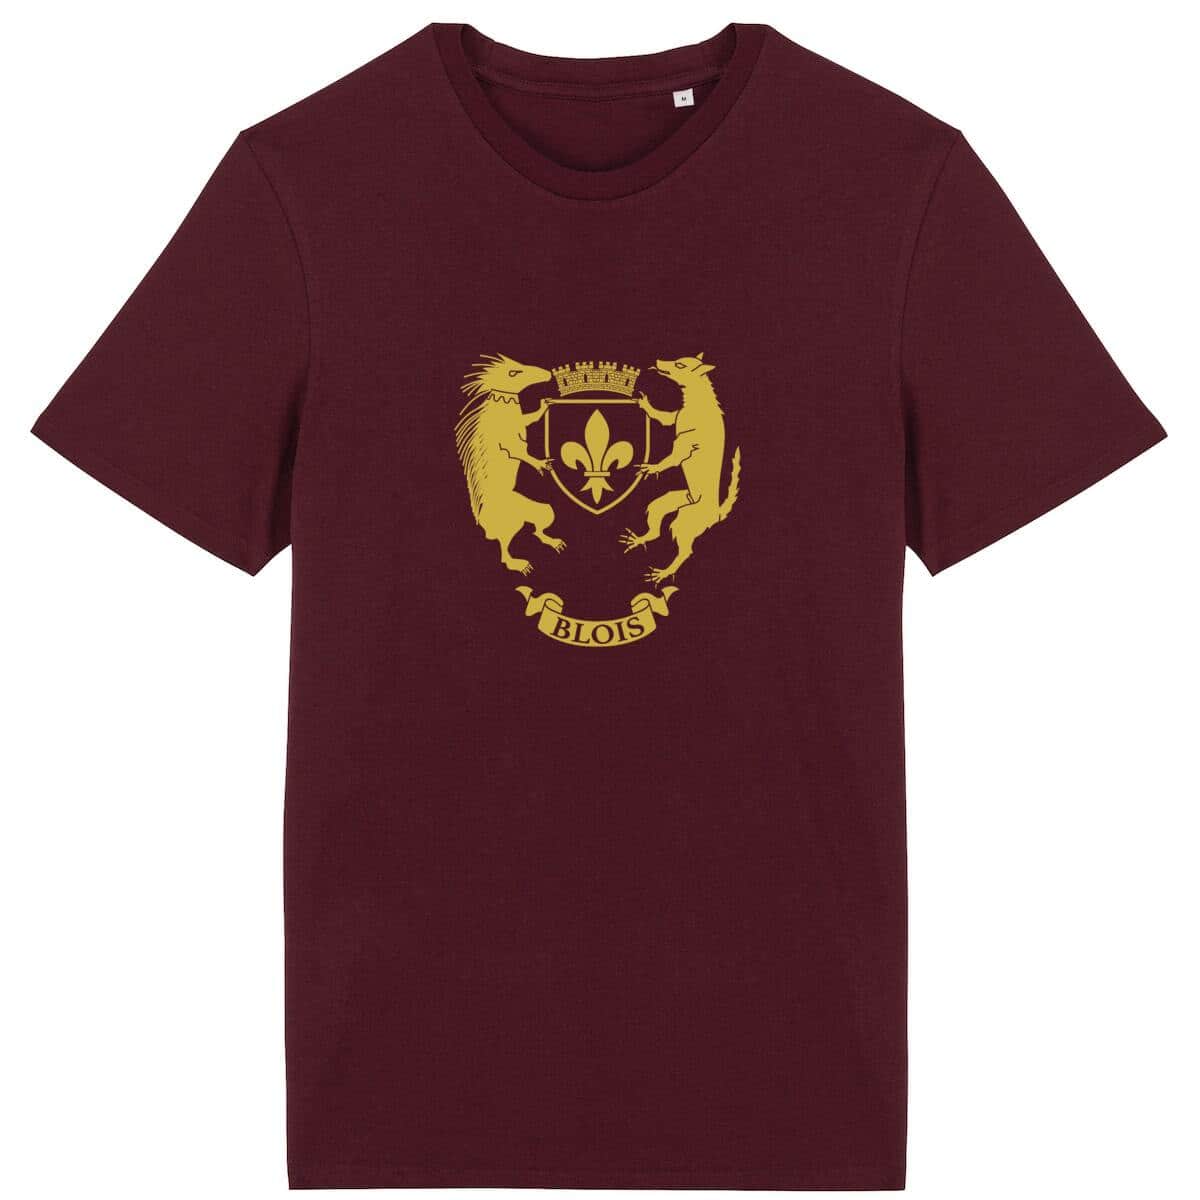 T-shirt - Armoiries de Blois Bordeaux / XS